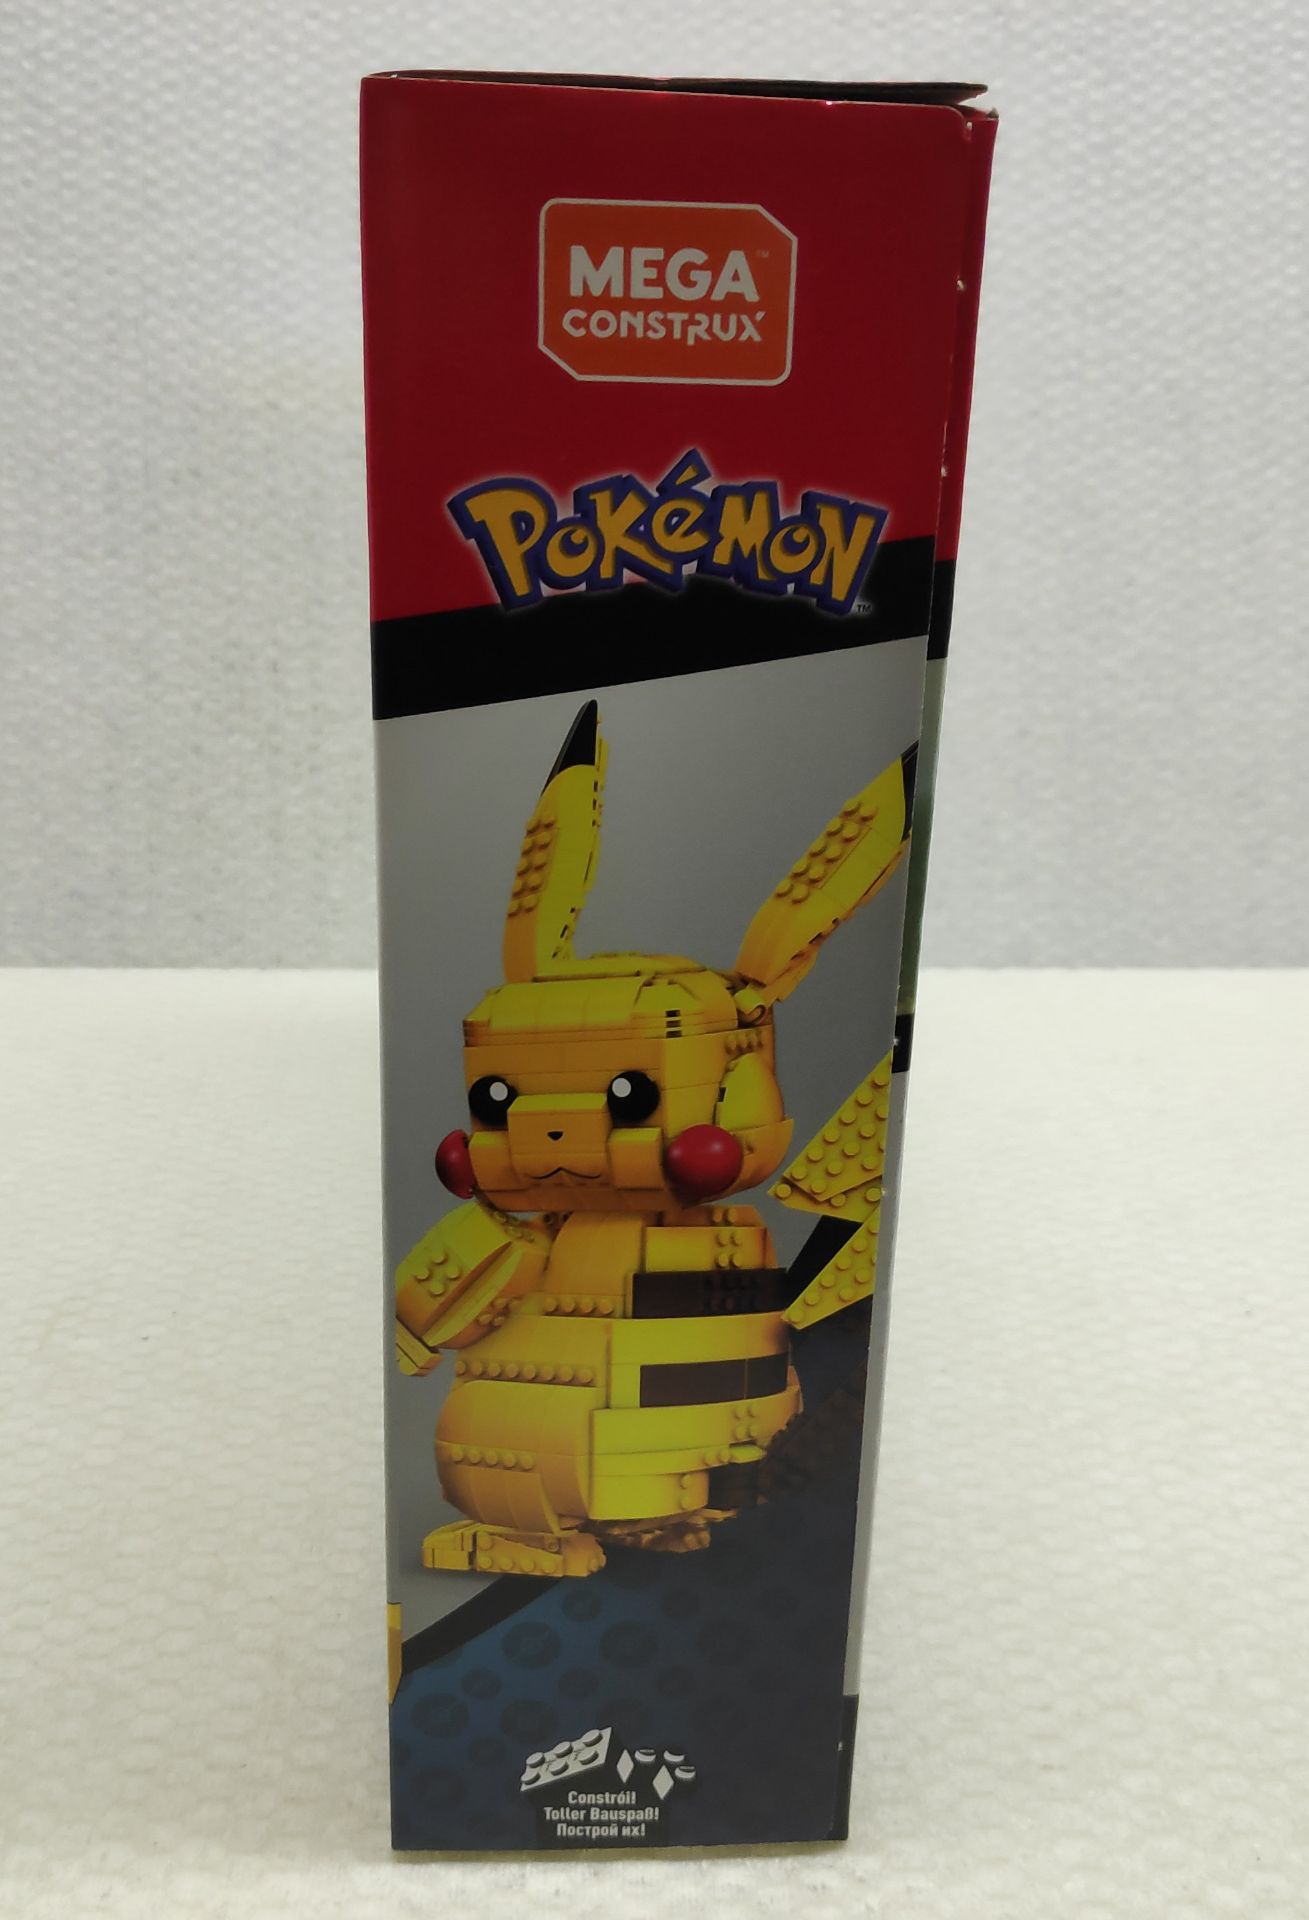 1 x Pokemon Mega Construx Jumbo Pikachu Lego-Style Building Set - New/Boxed - Image 5 of 7